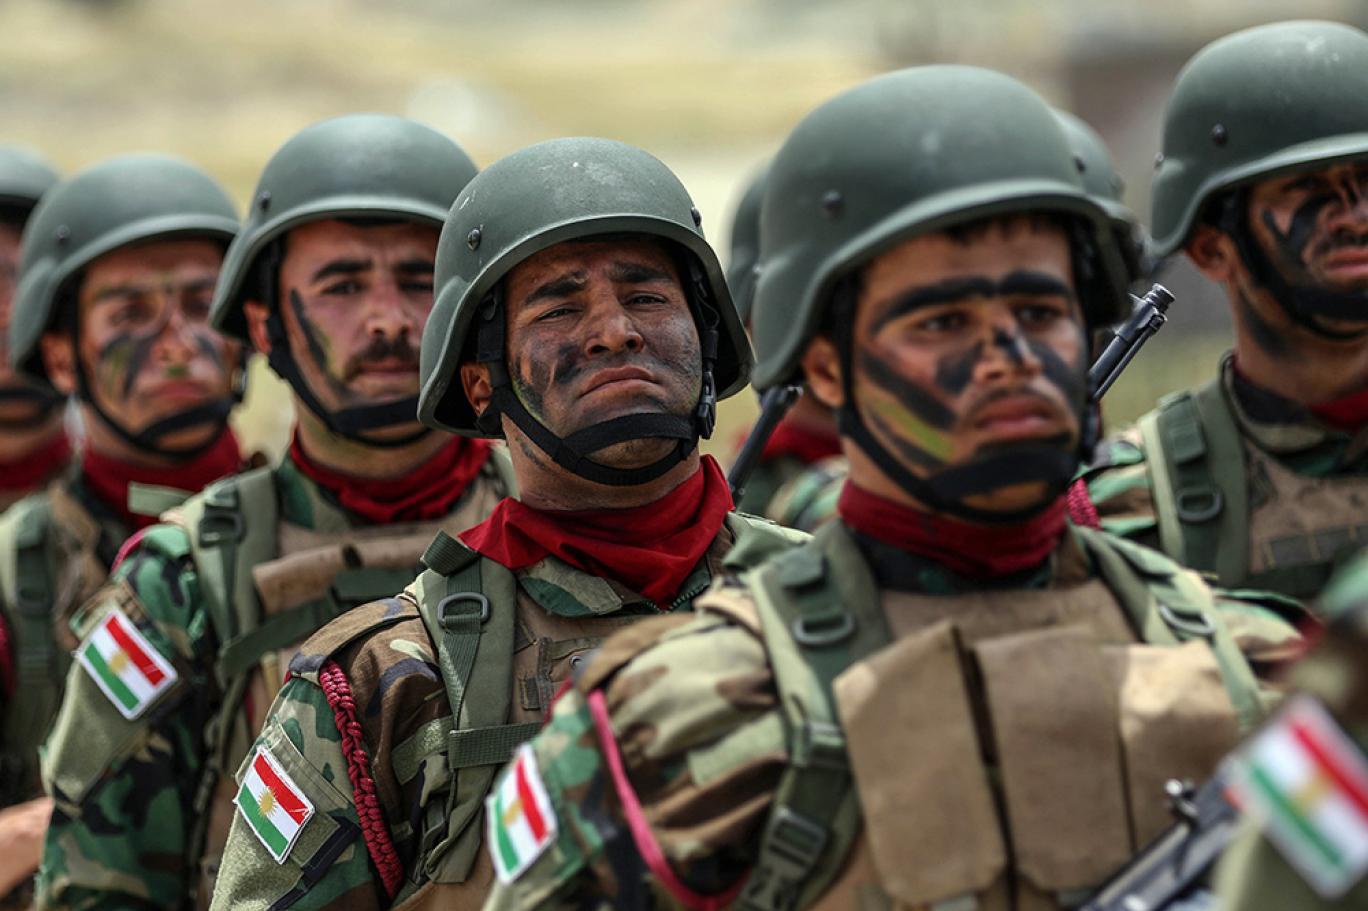 Peshmerga forces to return to Kirkuk next week: source